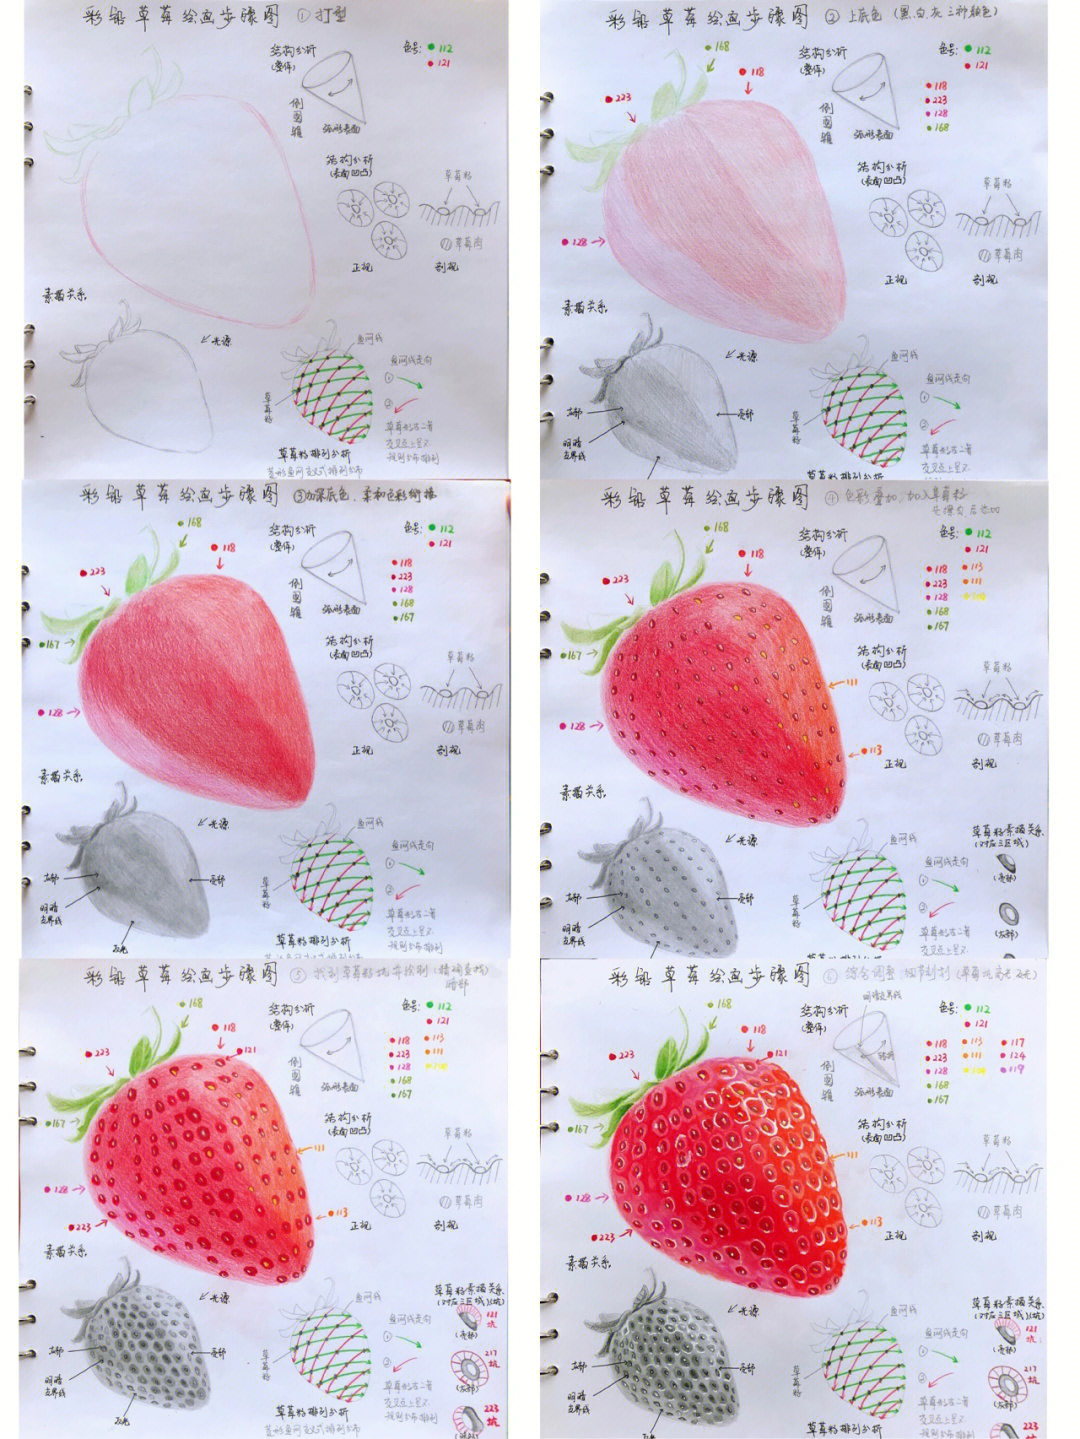 草莓彩铅画静态步骤详细解析最后图8要点